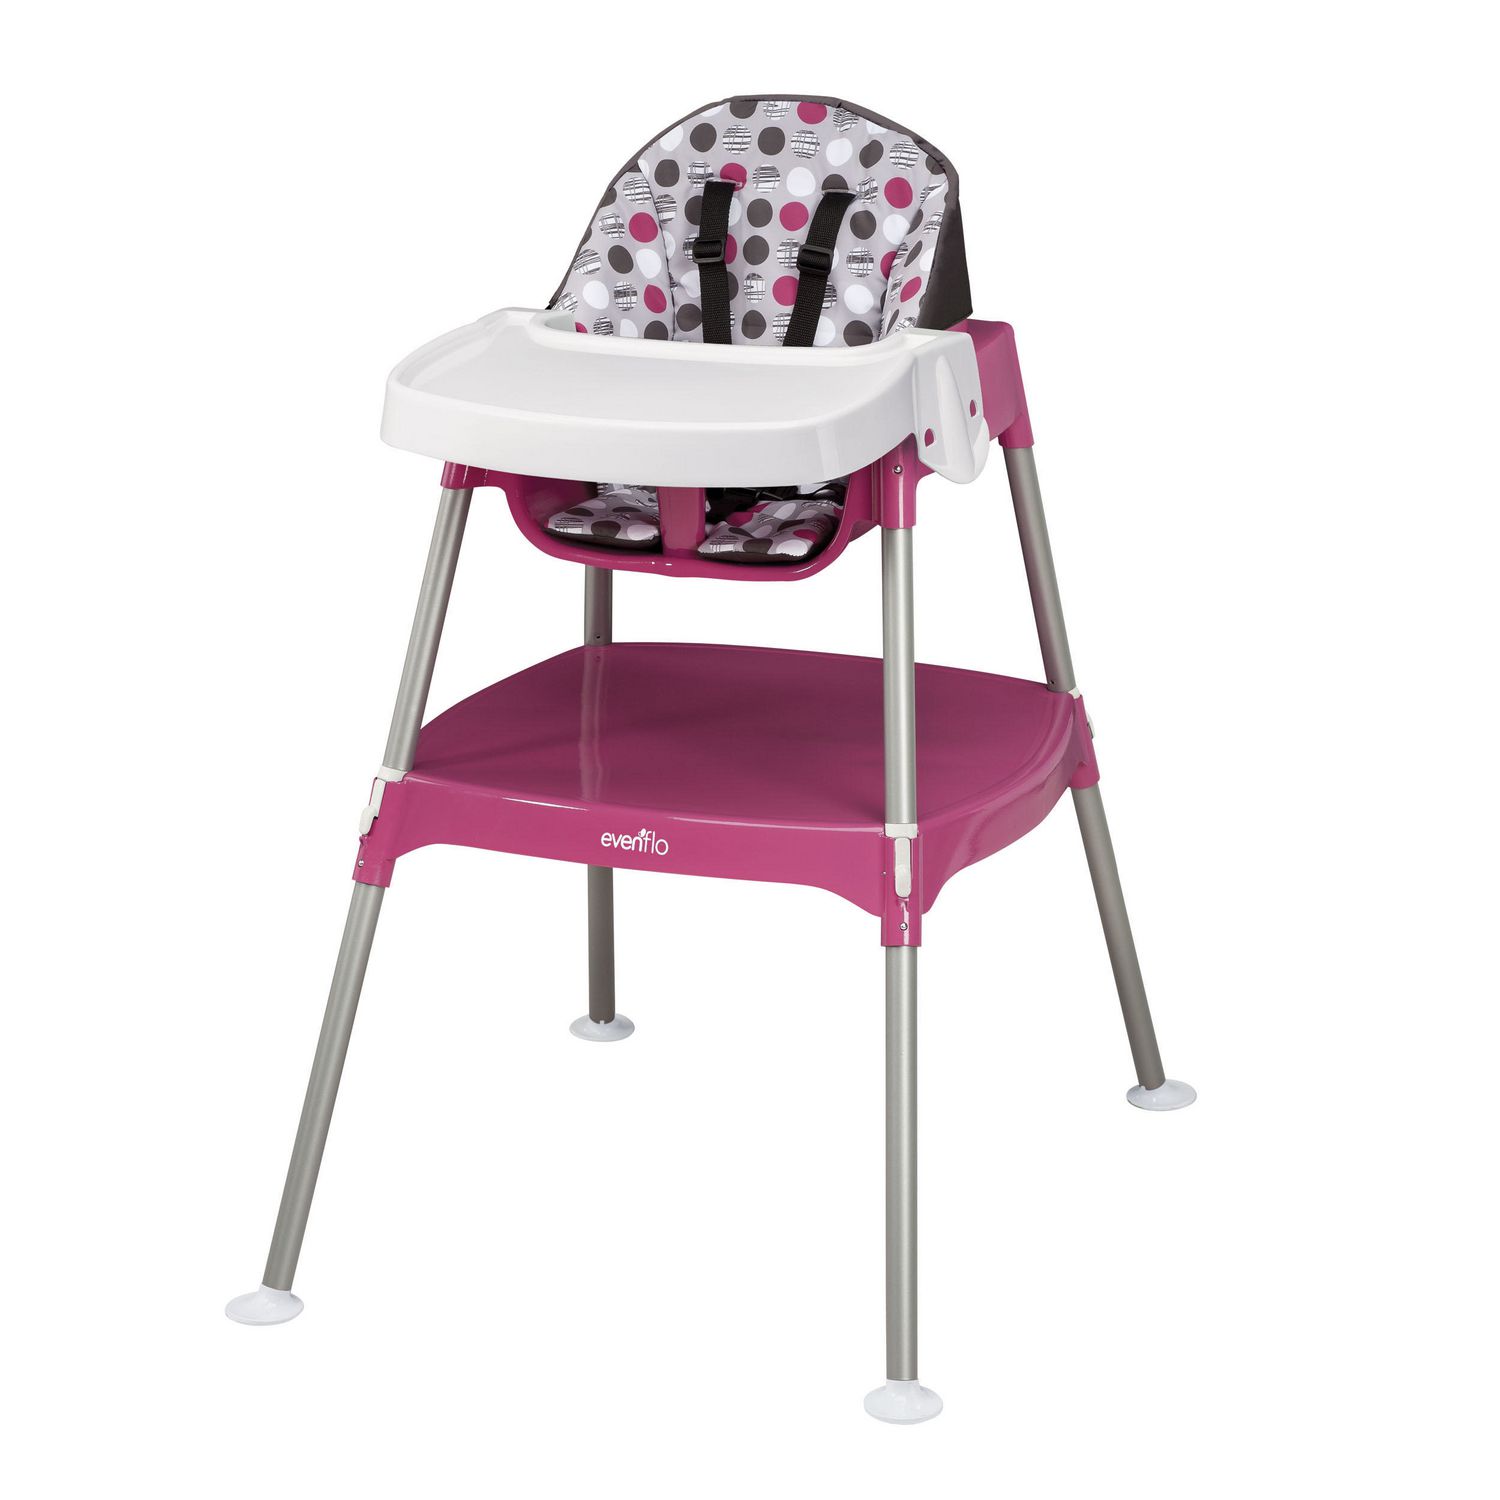 Bébé Confort - Chaise haute 3 en 1 — La Ribouldingue